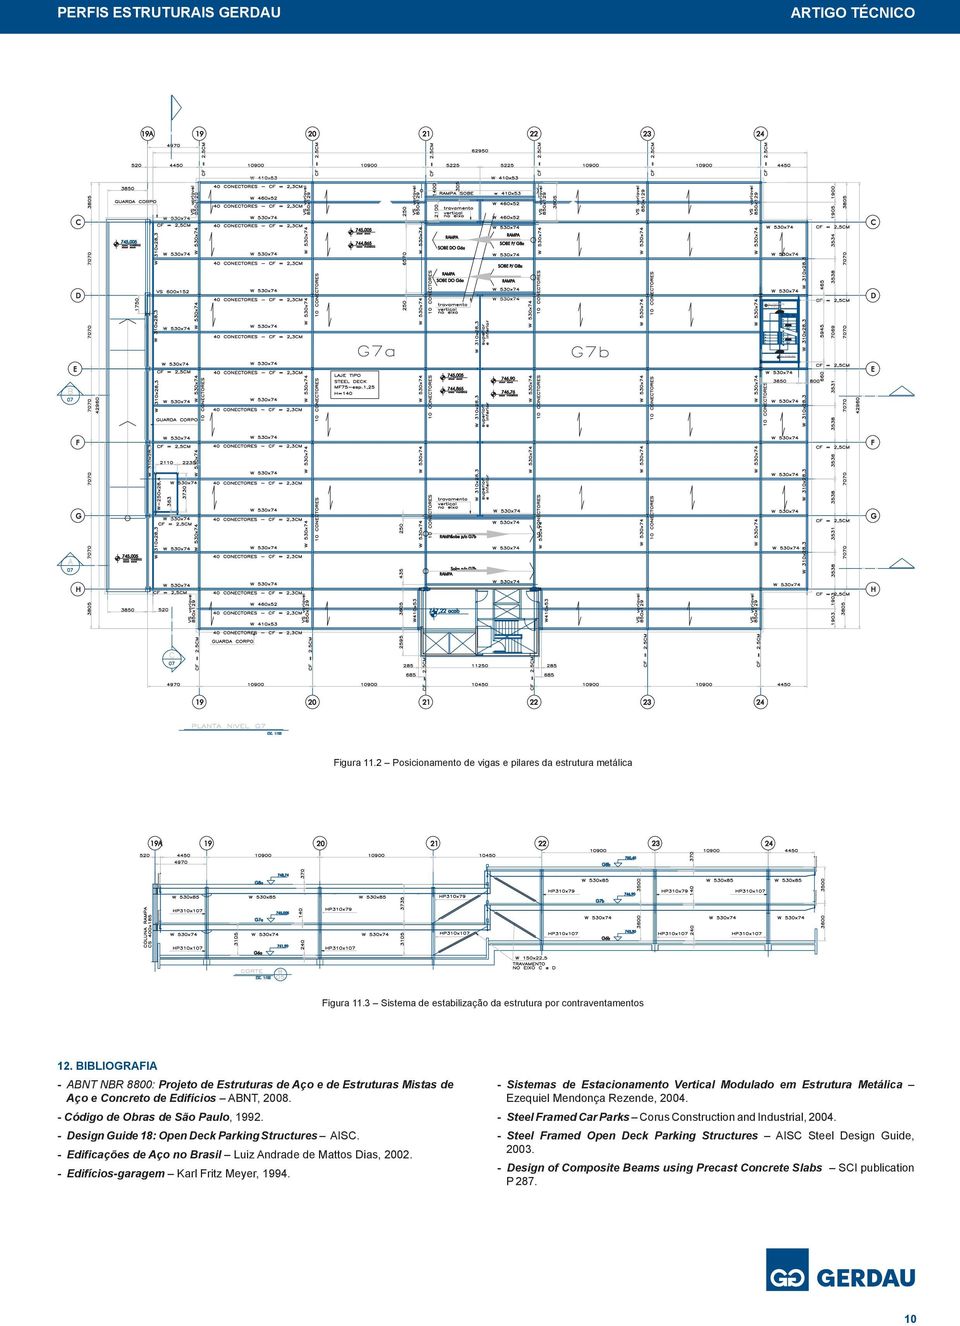 - Design Guide 18: Open Deck Parking Structures AISC. - Edificações de Aço no Brasil Luiz Andrade de Mattos Dias, 2002. - Edifícios-garagem Karl Fritz Meyer, 1994.